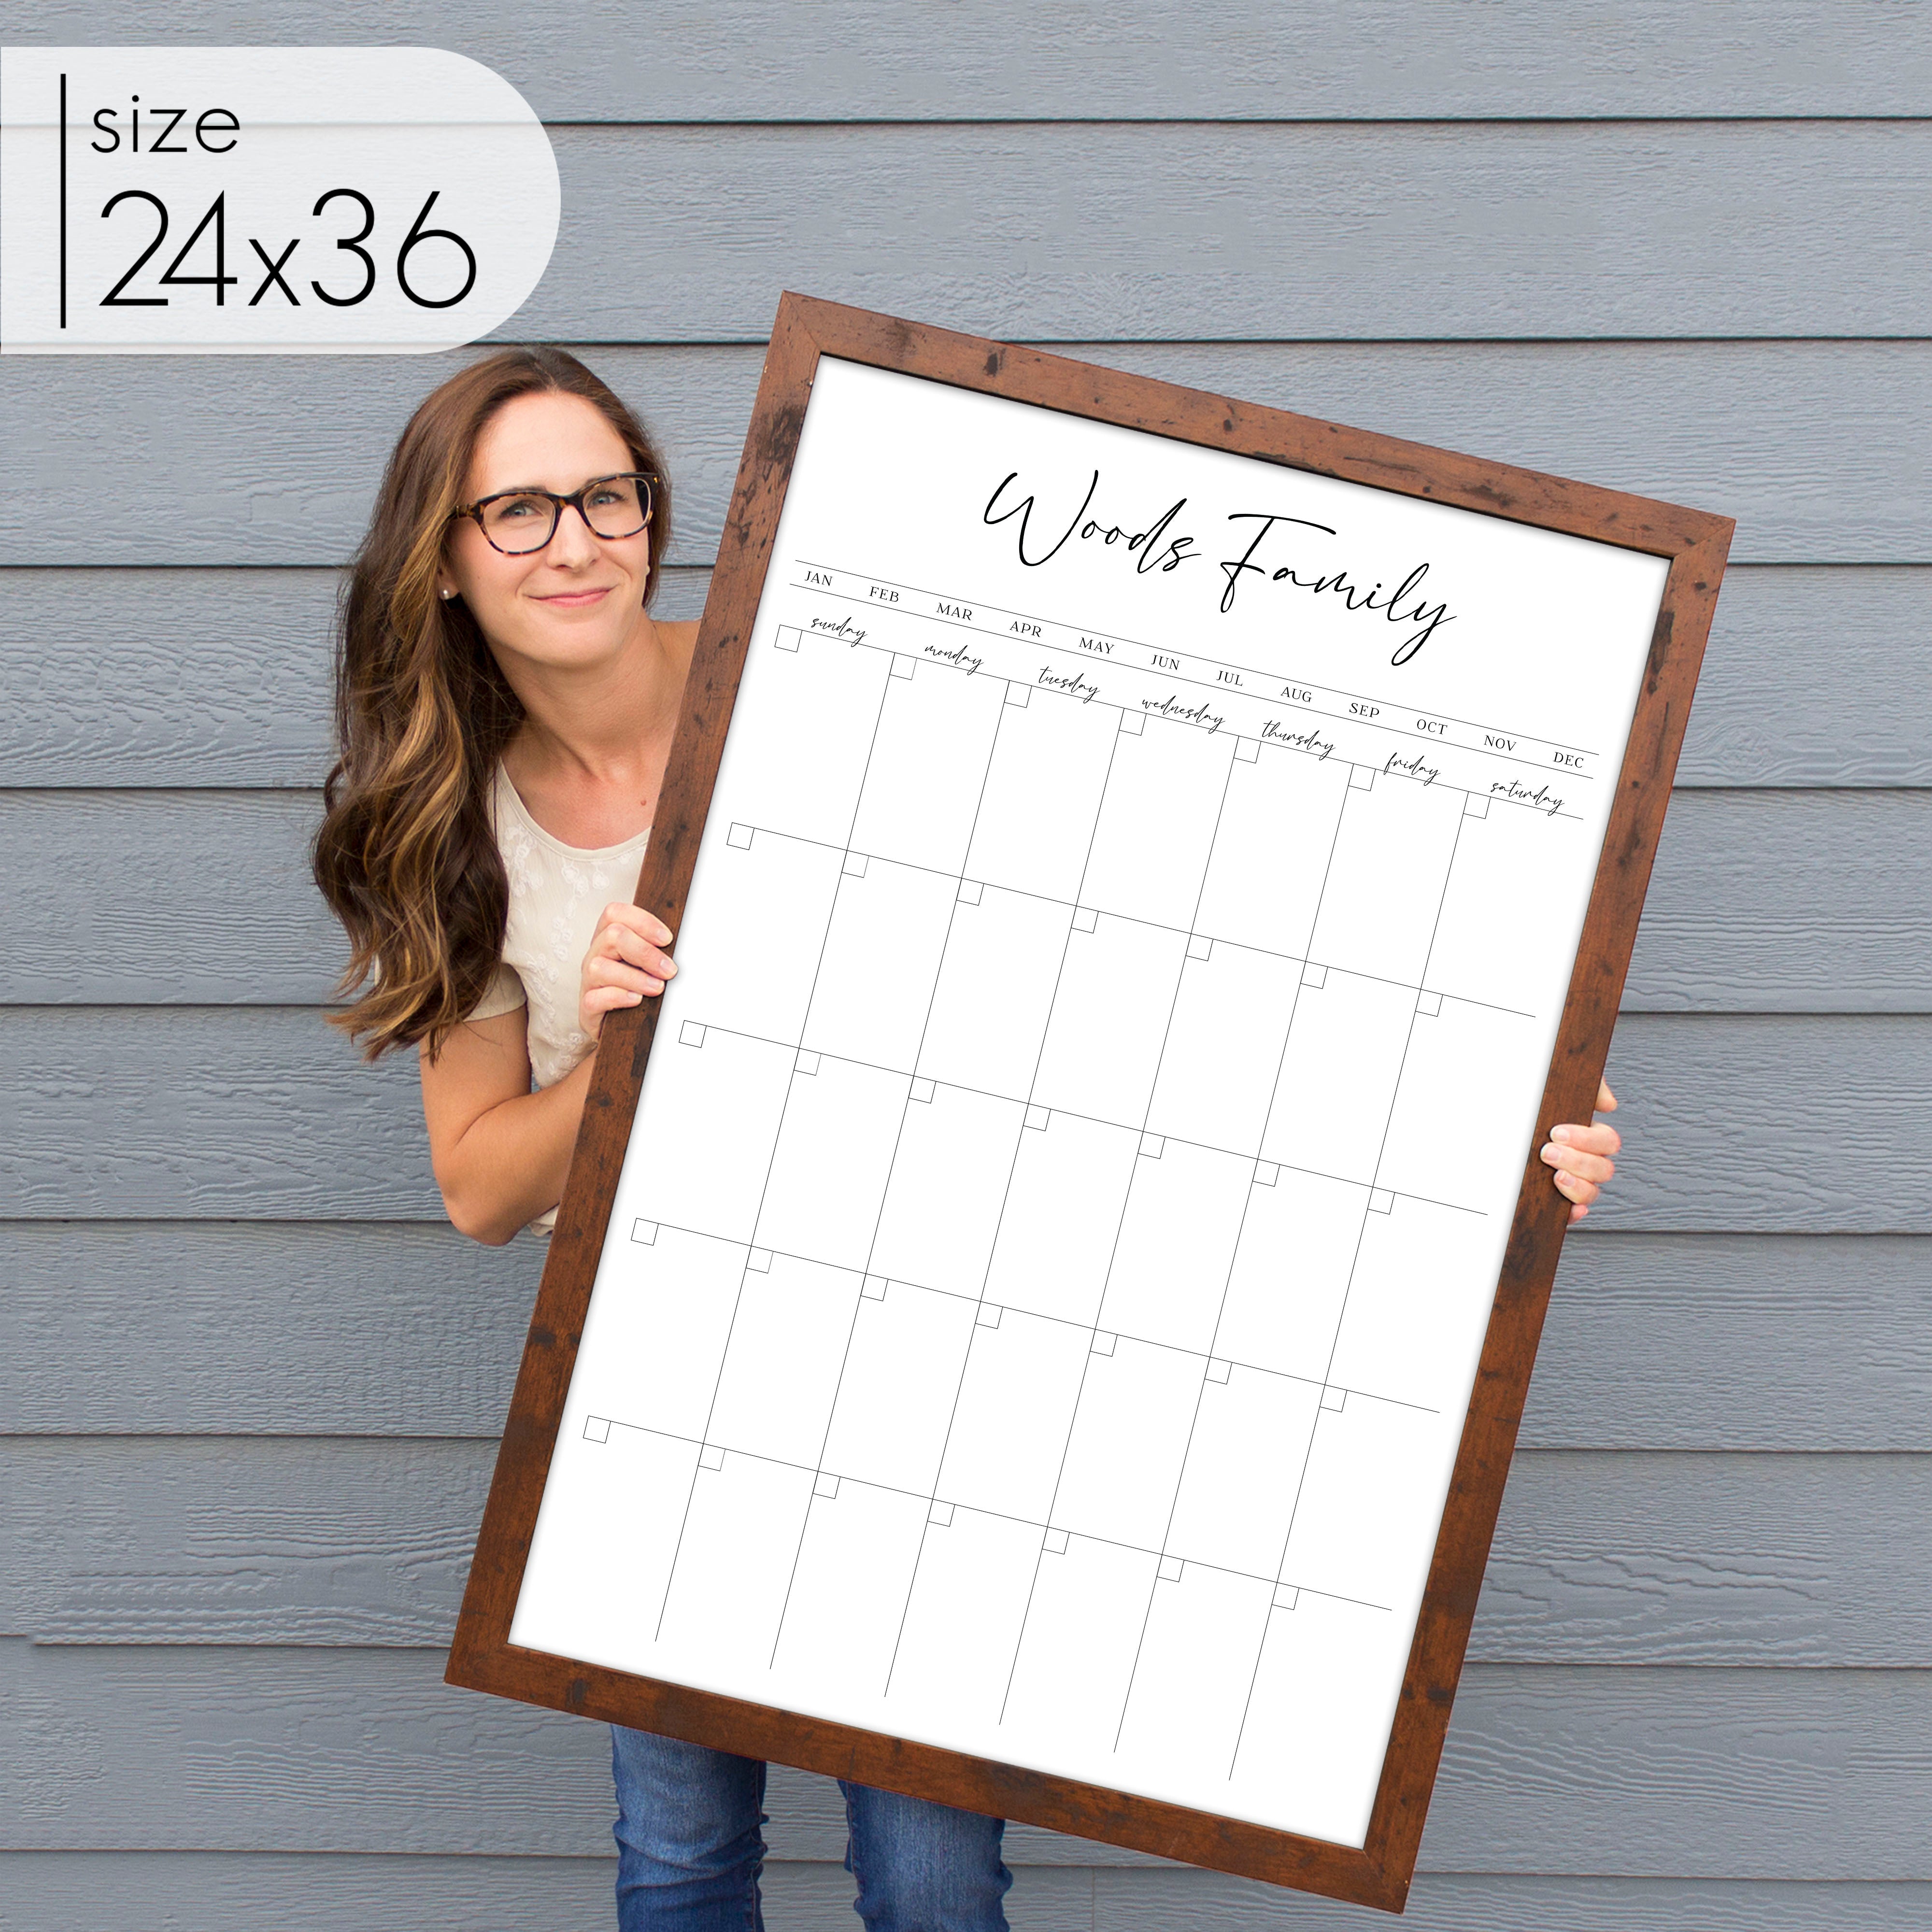 Monthly Framed Whiteboard Calendar | Vertical Pennington